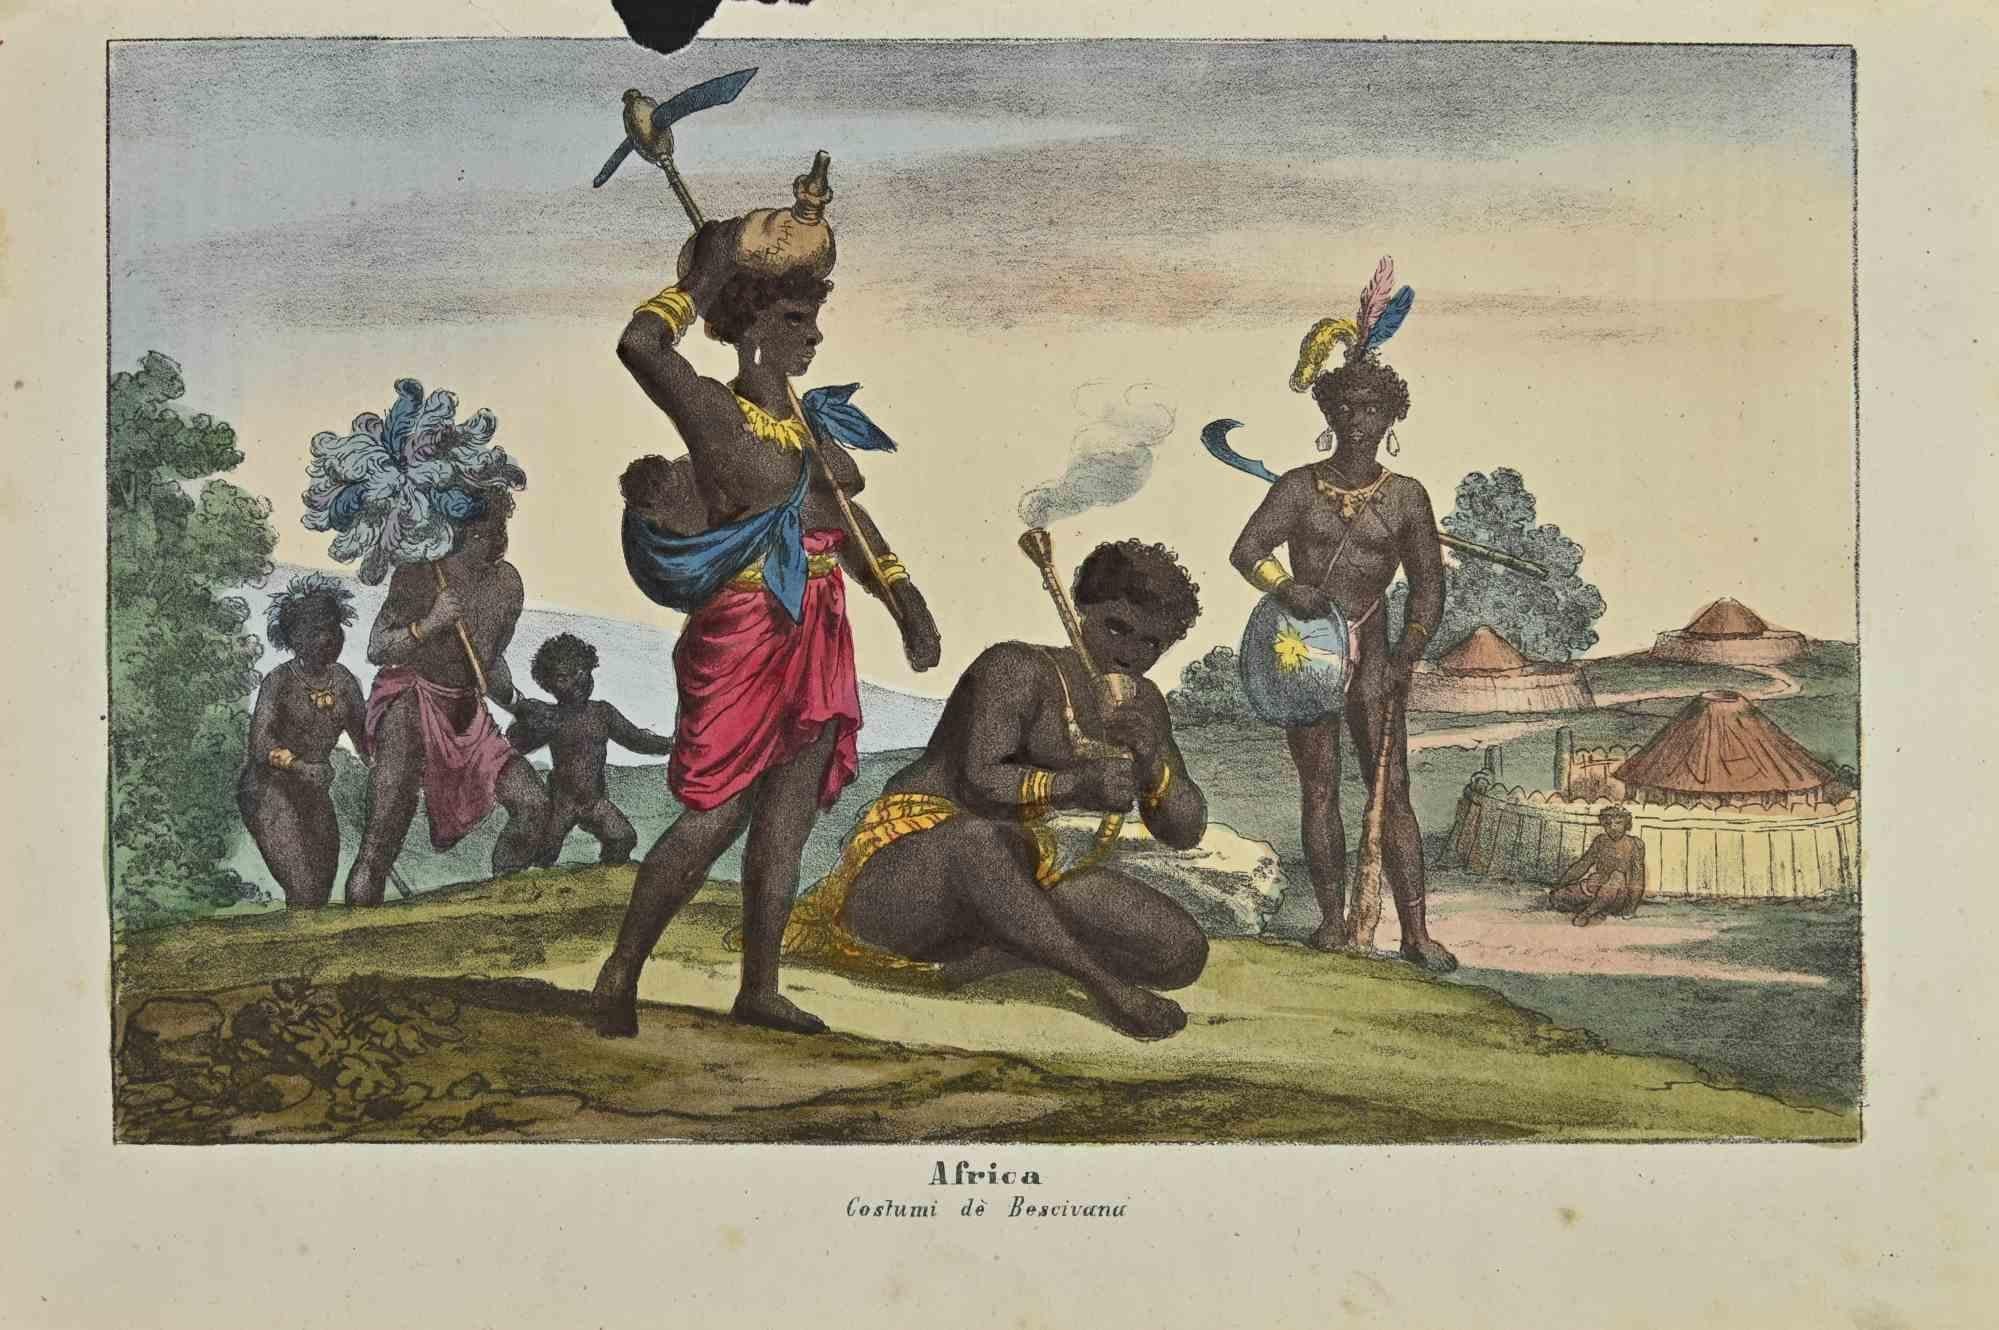 Anciennes coutumes africaines est une lithographie réalisée par Auguste Wahlen en 1844.

Coloré à la main.

Bon état.

Le titre original "Africa" et le sous-titre "Costumi dè Bescivana" figurent au centre de l'œuvre. 

L'œuvre fait partie de la